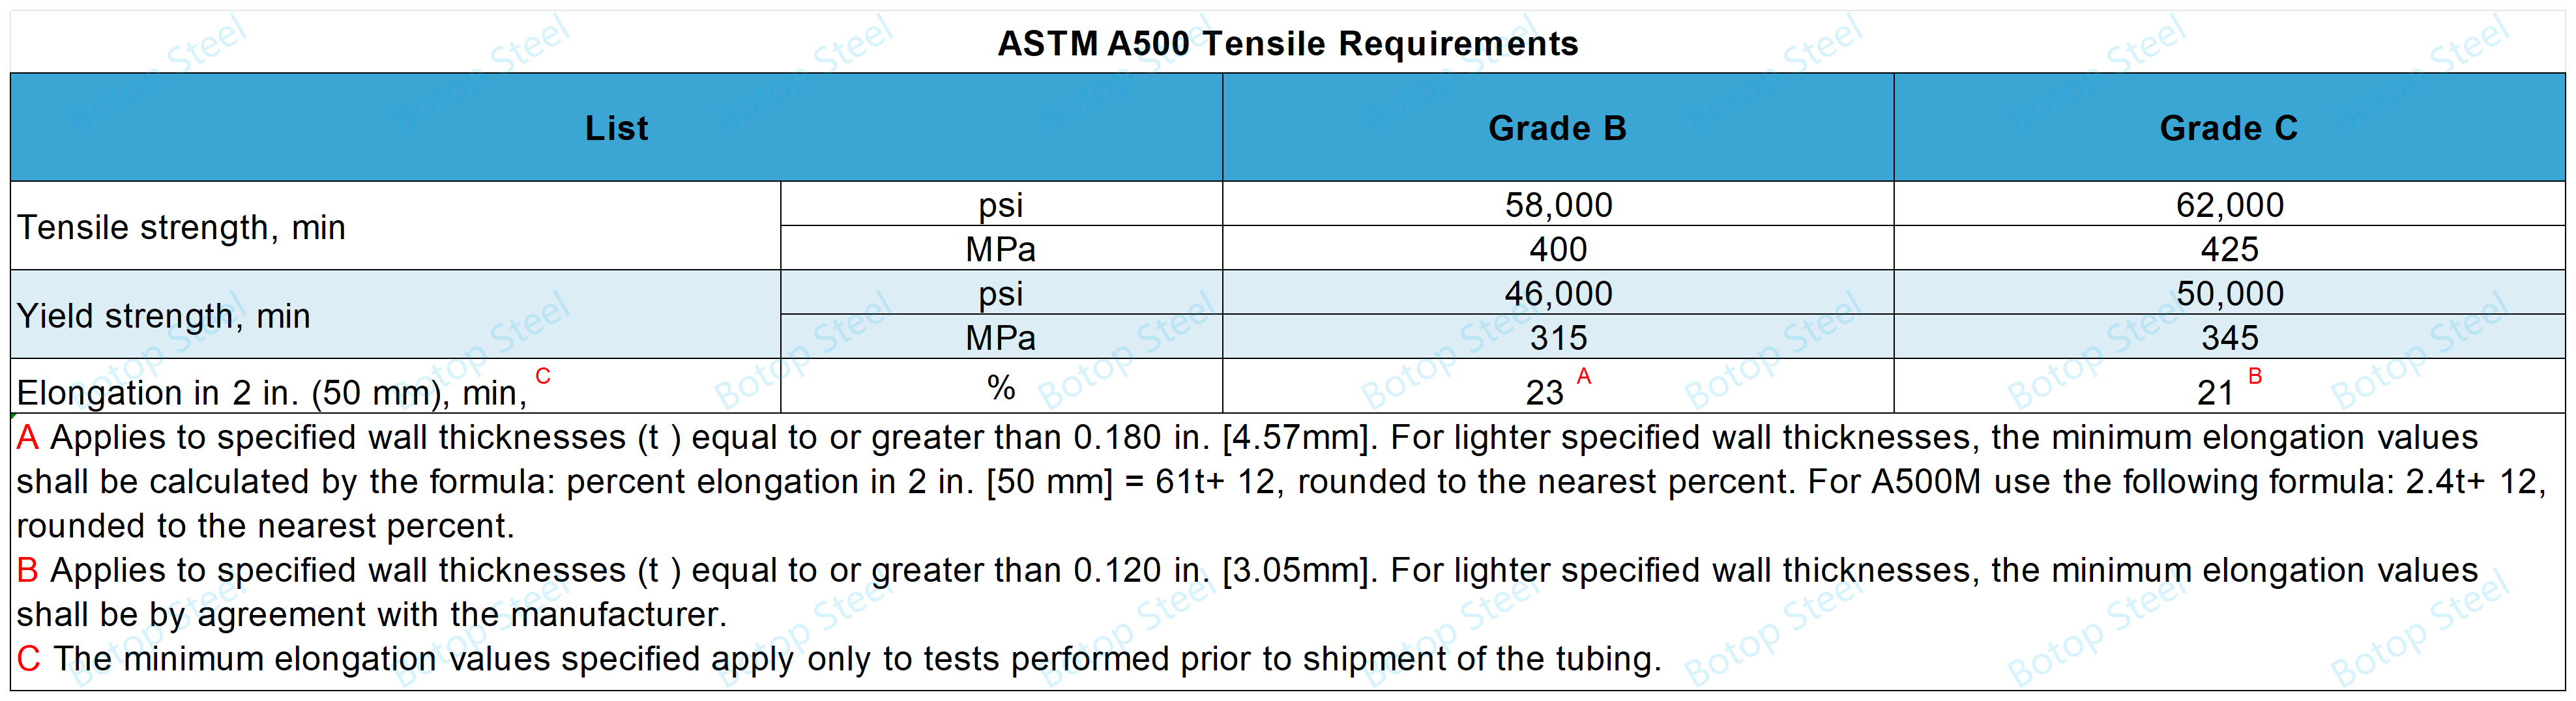 ASTM A500 Grade B vs Grade C-Tensile Requirements